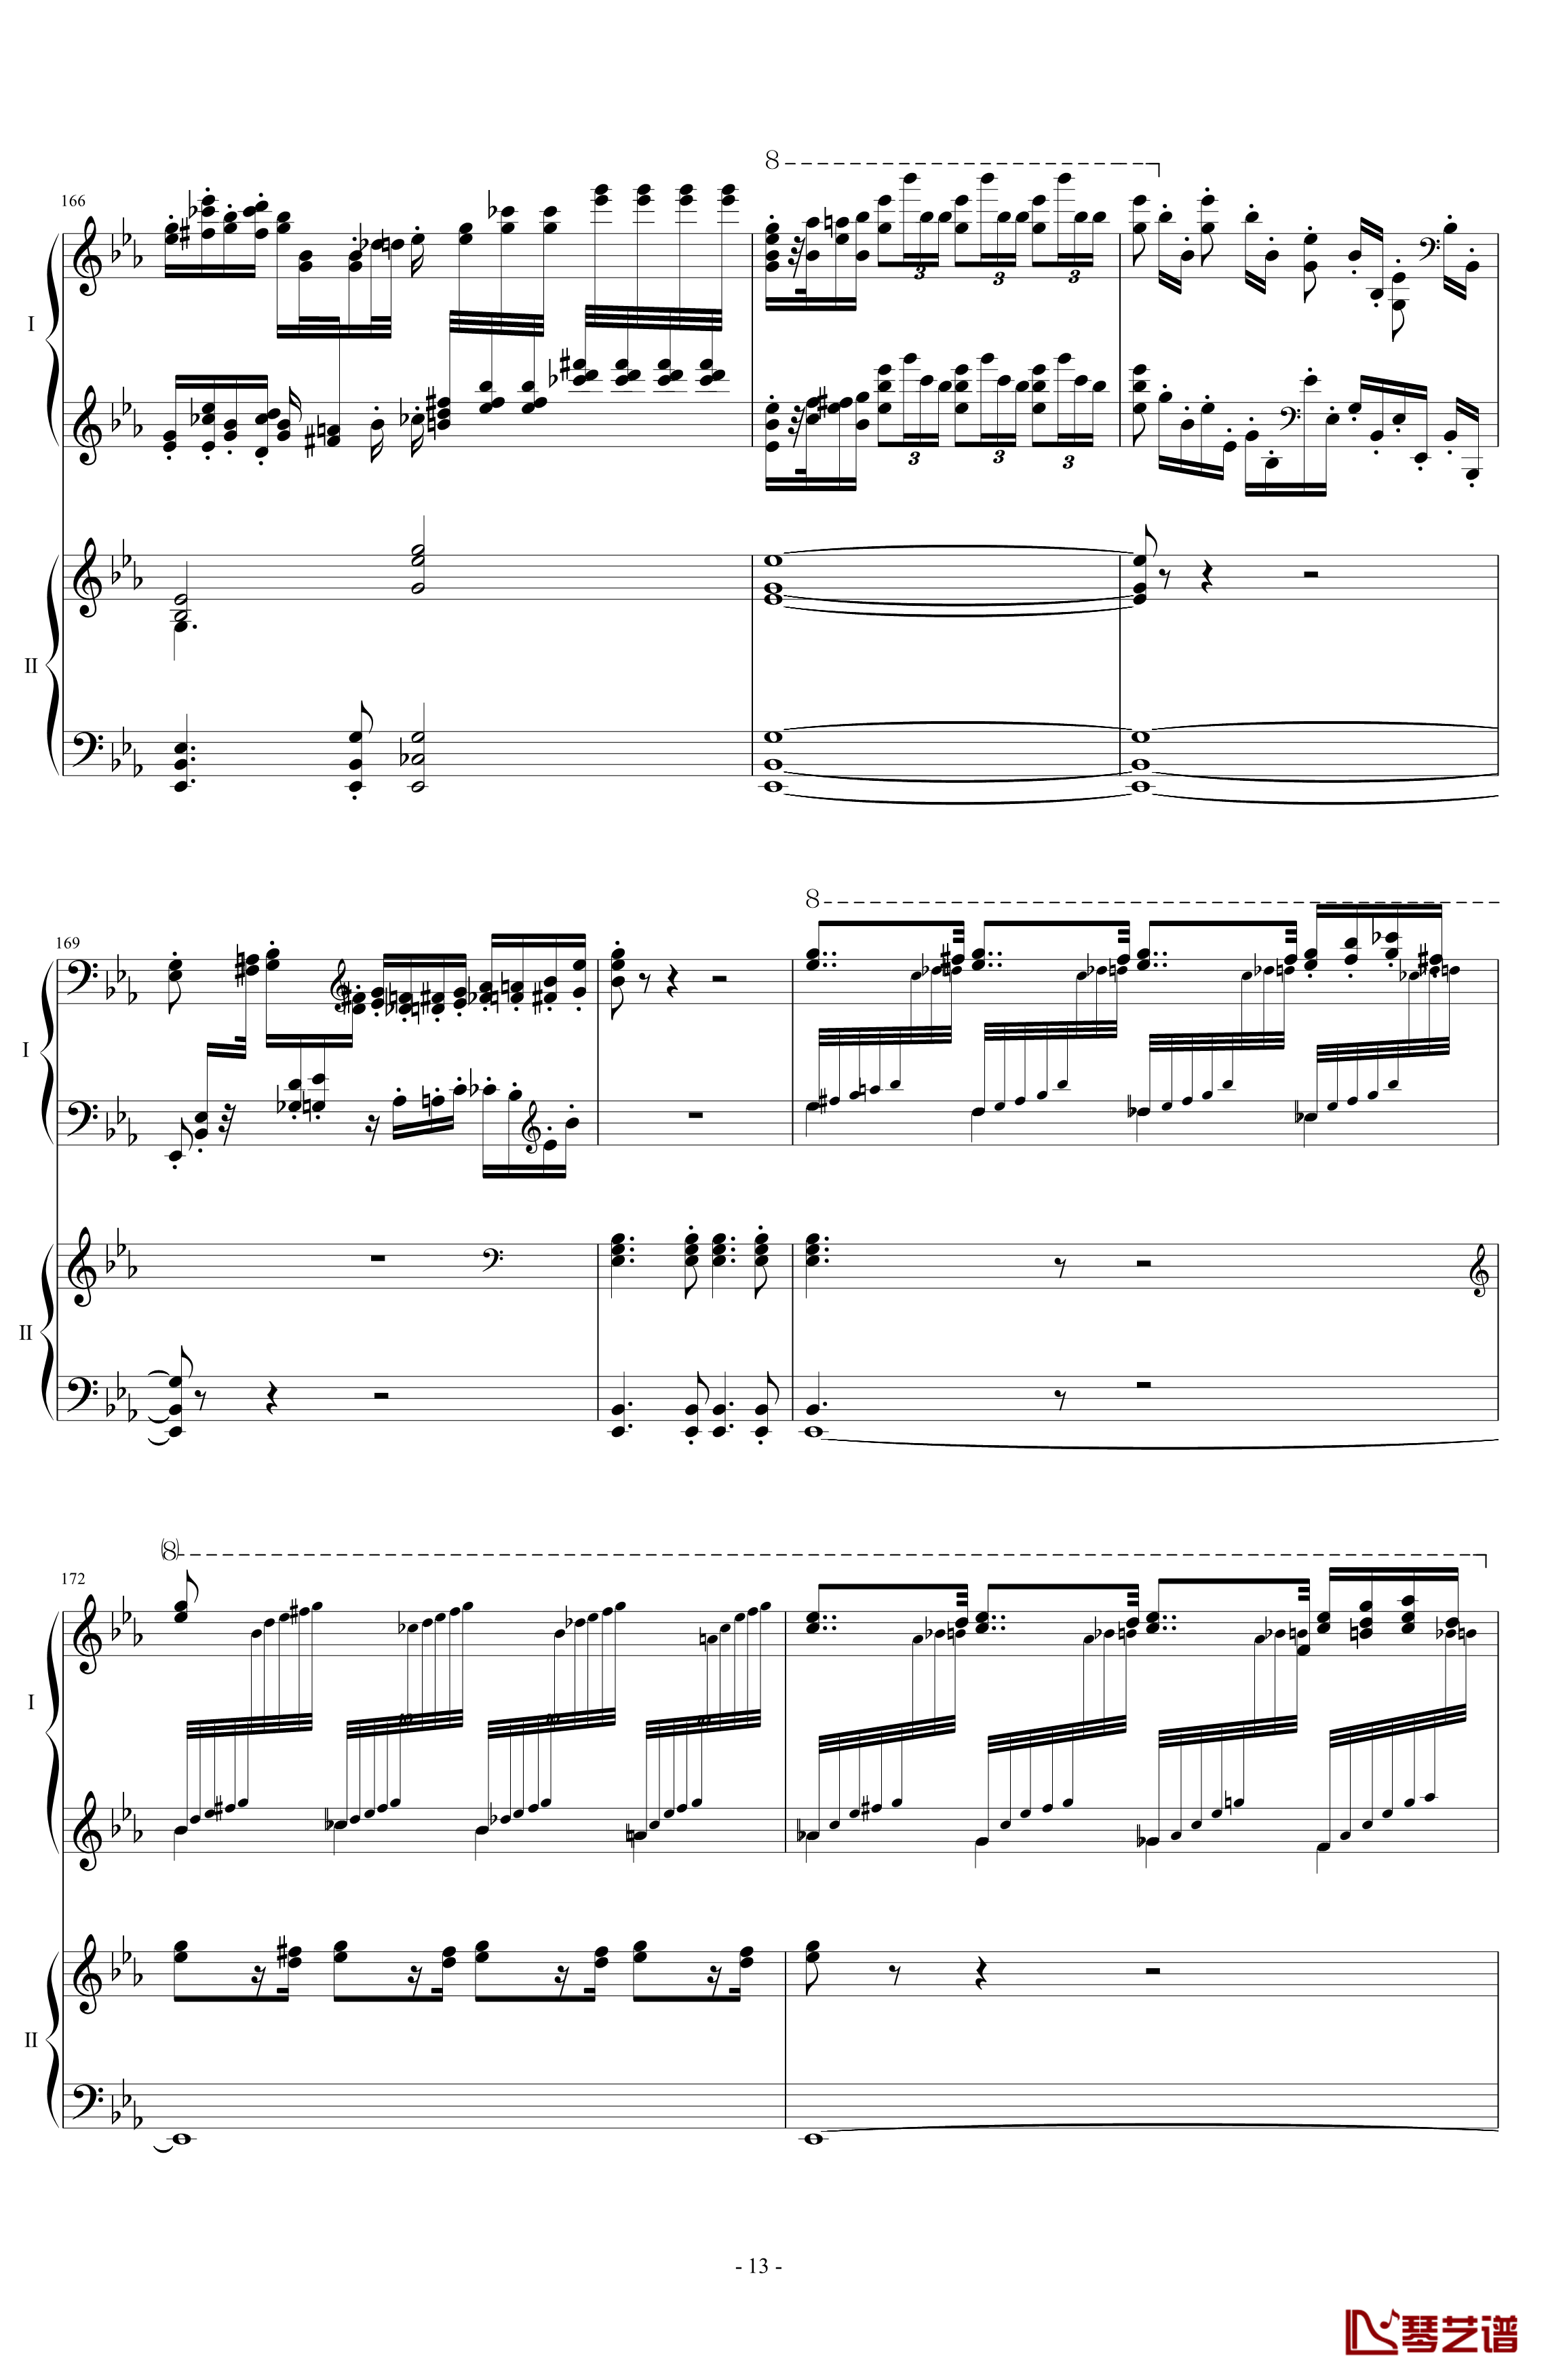 拉三第三乐章41页双钢琴钢琴谱-最难钢琴曲-拉赫马尼若夫13